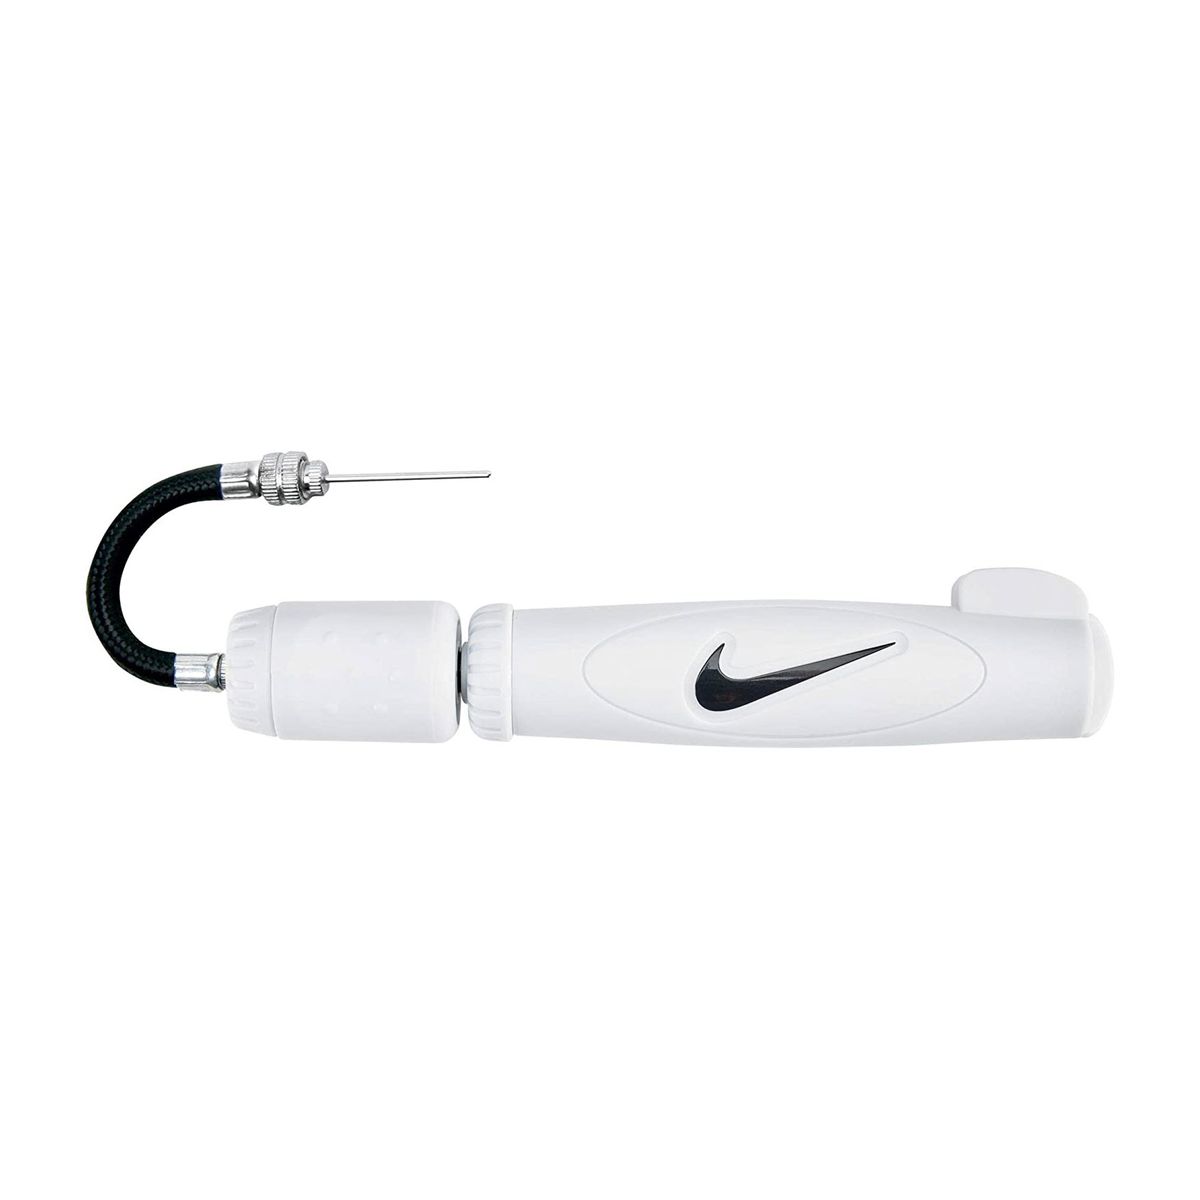 Насос для м'ячів Nike Ball Pump (білий), OneSize